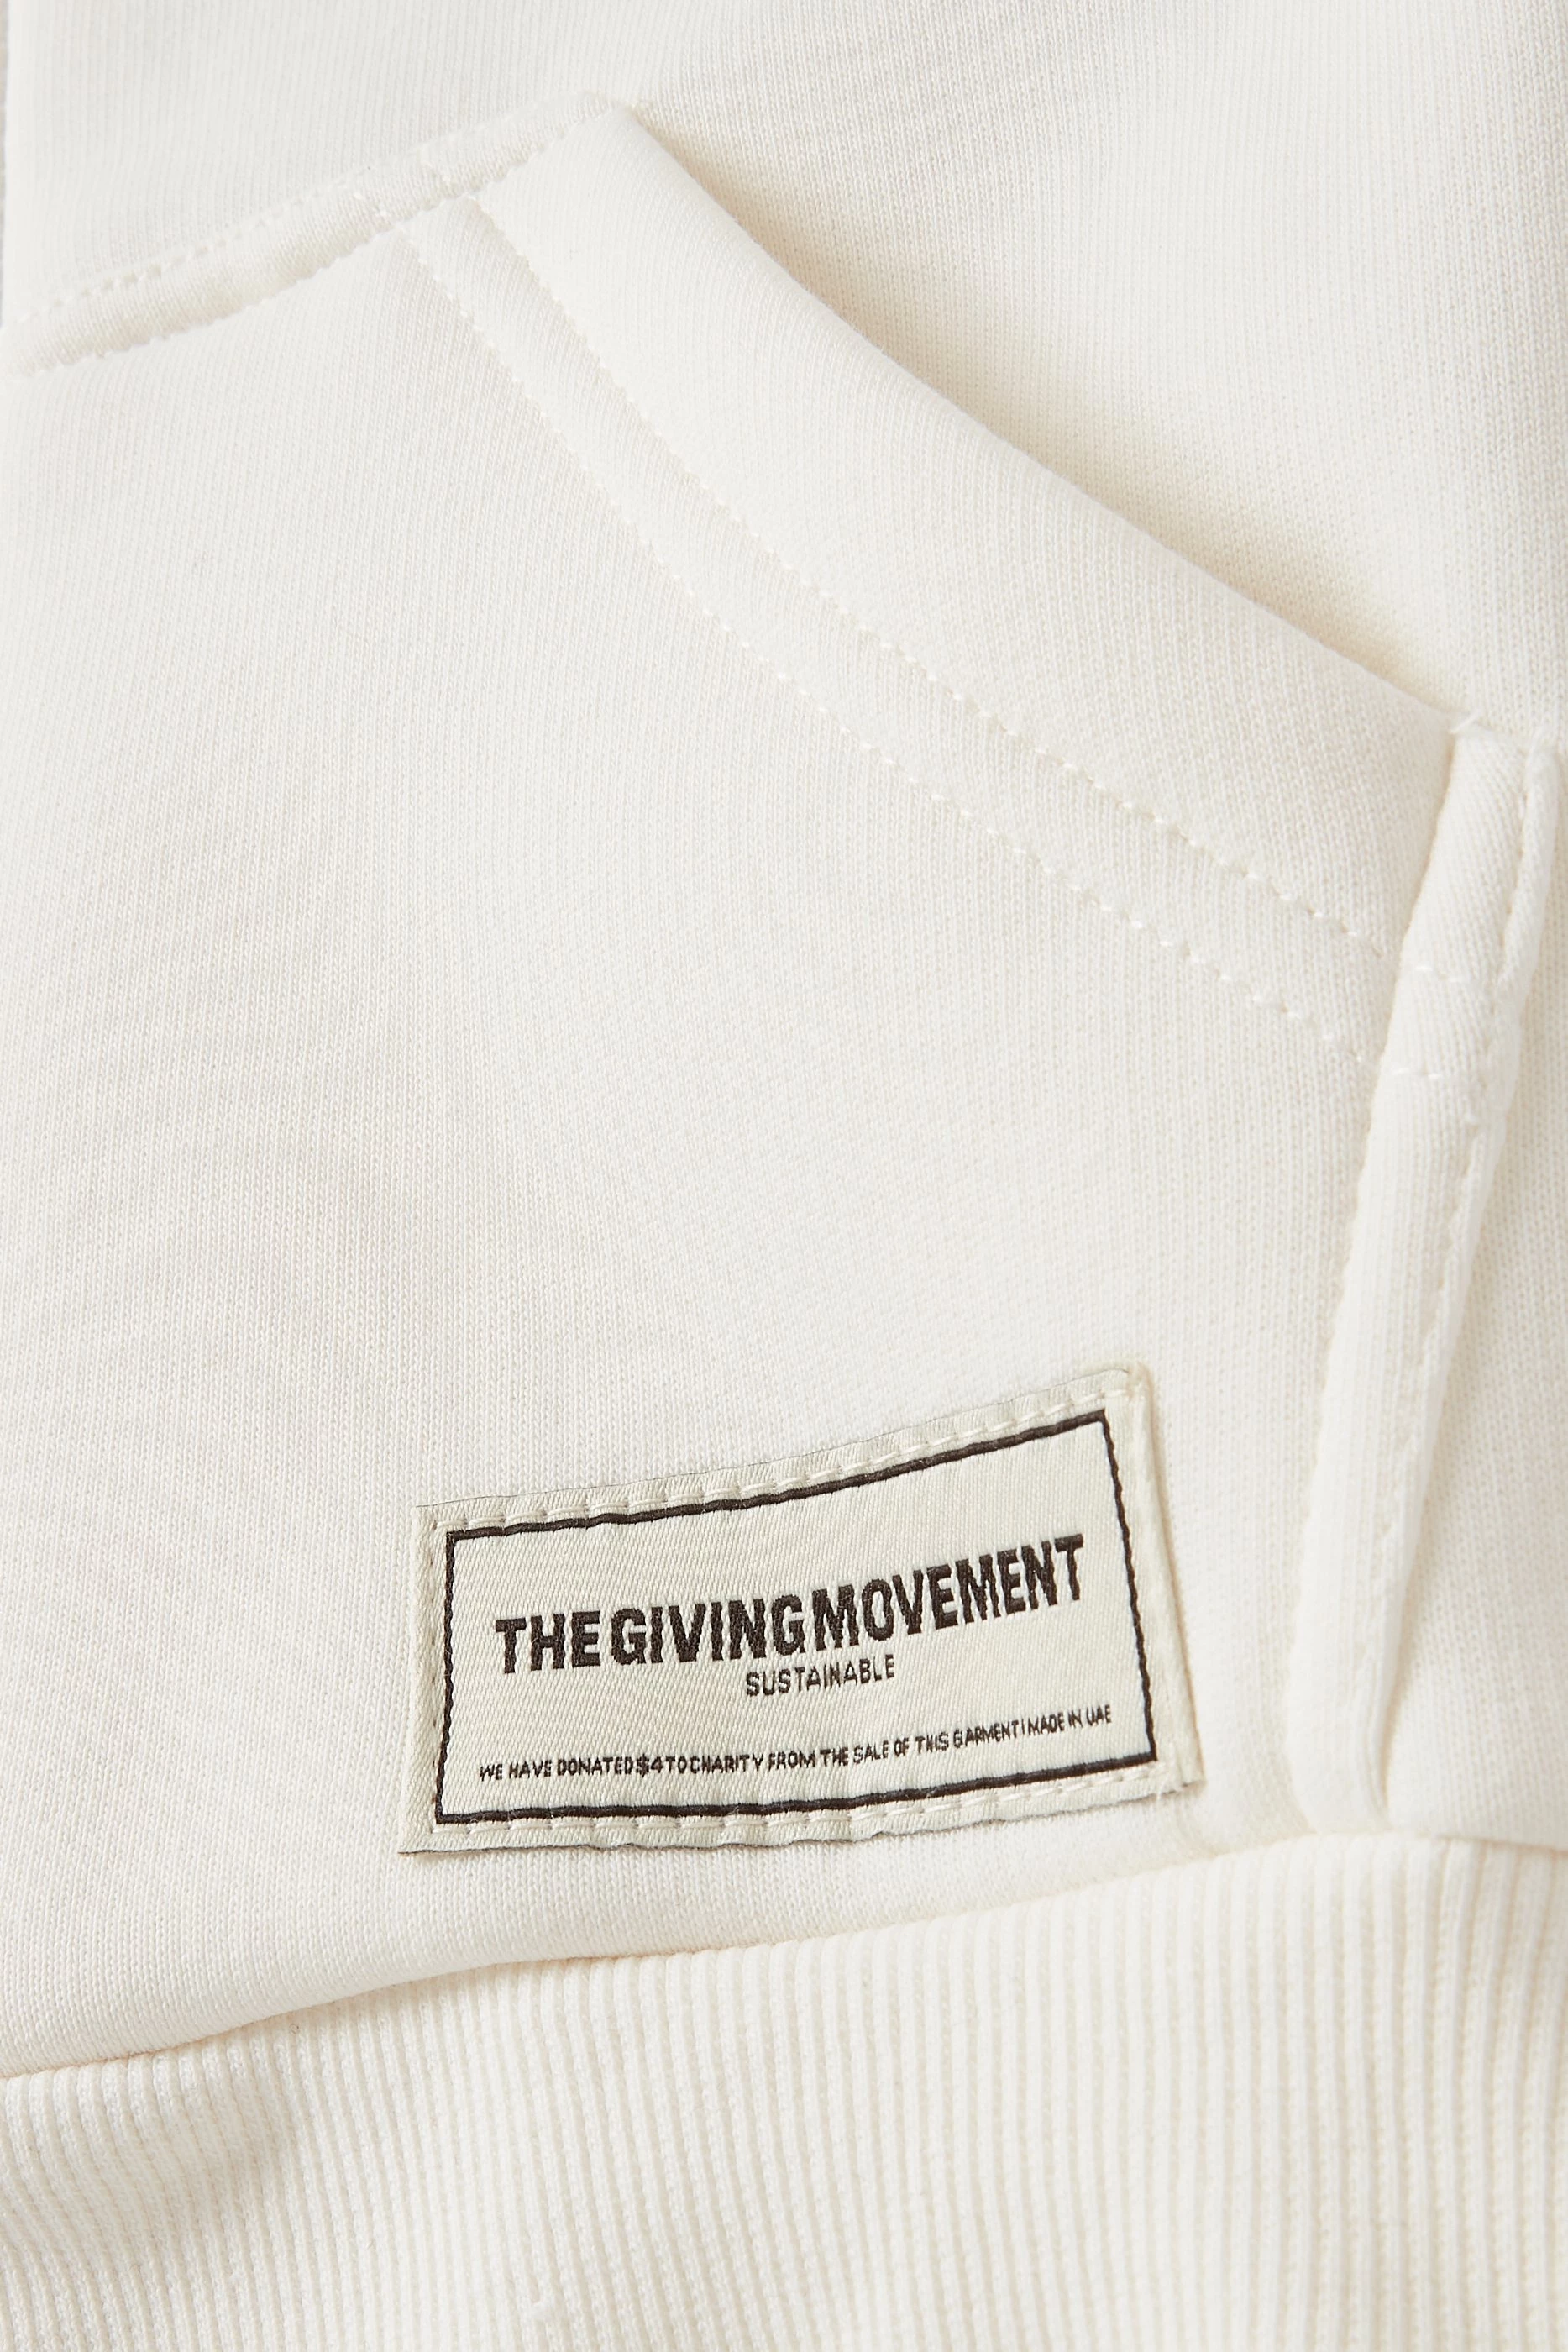 Regular-Fit LA Organic Fleece Zip Hoodie – The Giving Movement I